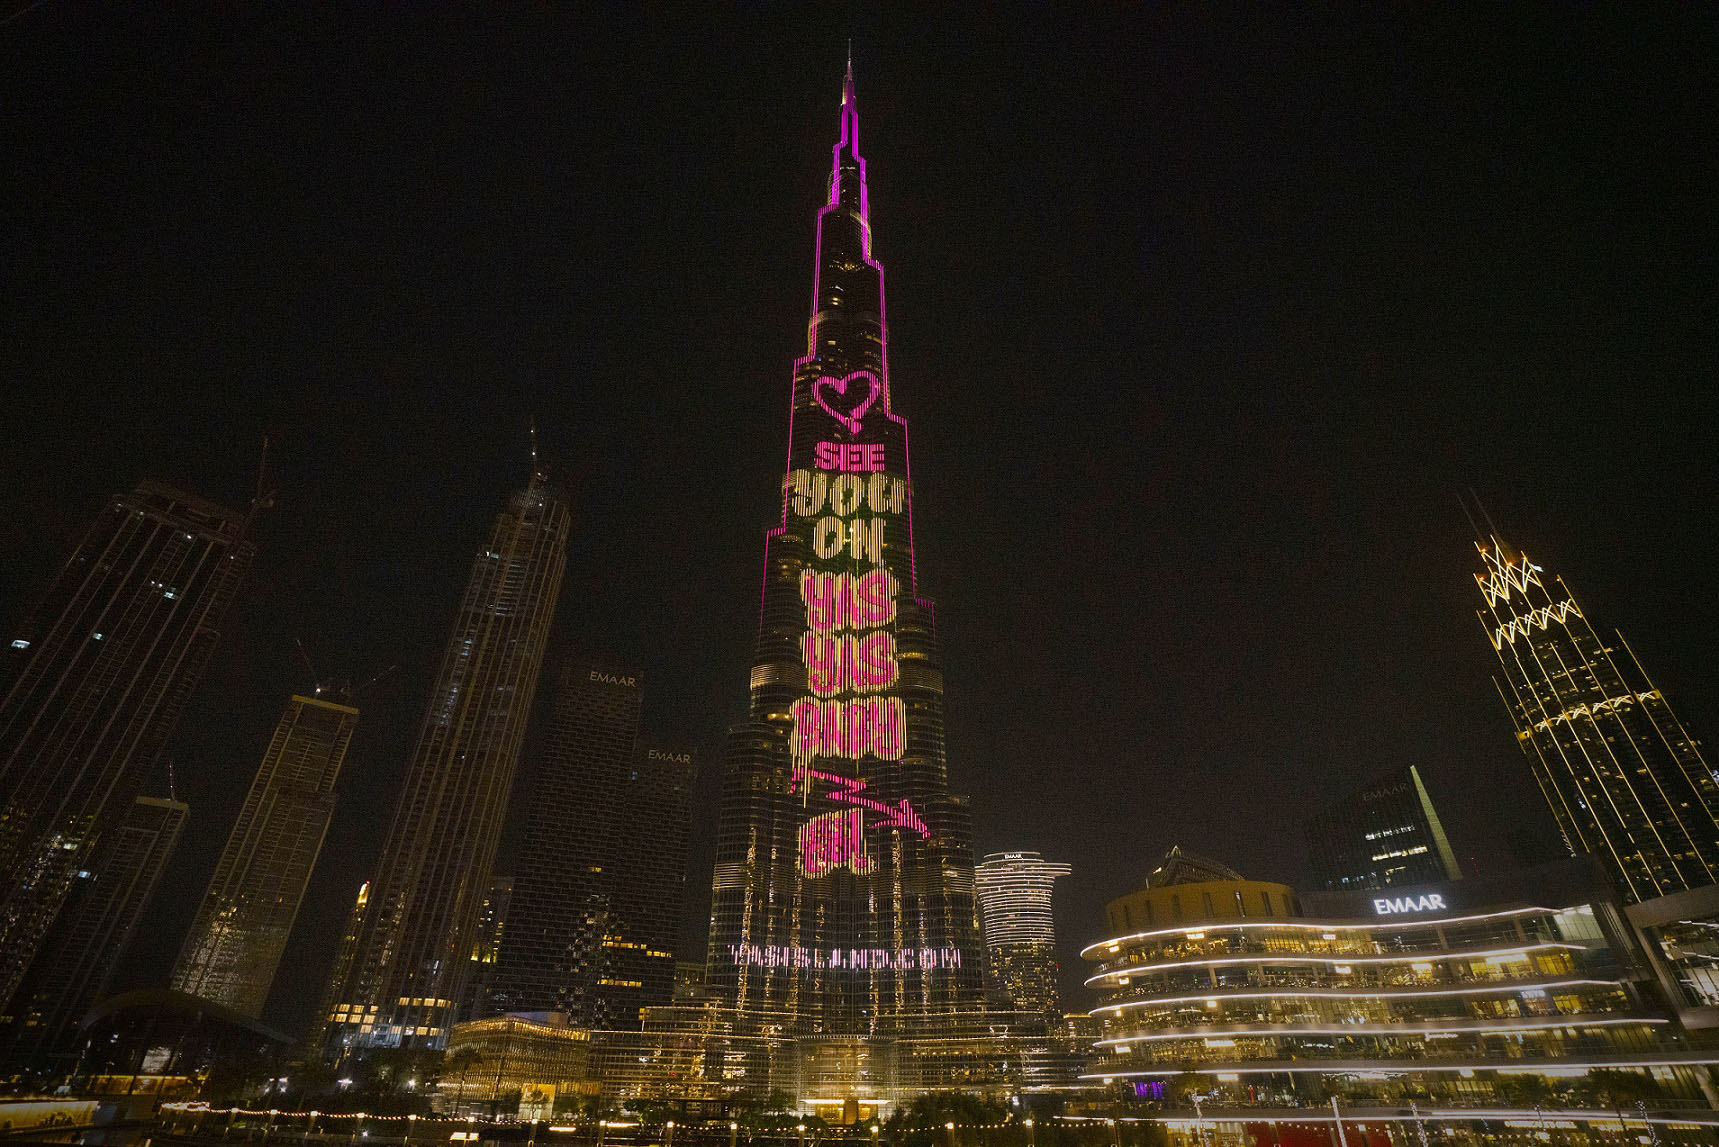 جزيرة ياس تقدم «أكبر عرض كاريوكي في العالم» على برج خليفة بأغنية «ياس ياس بيبي» - الاقتصادي